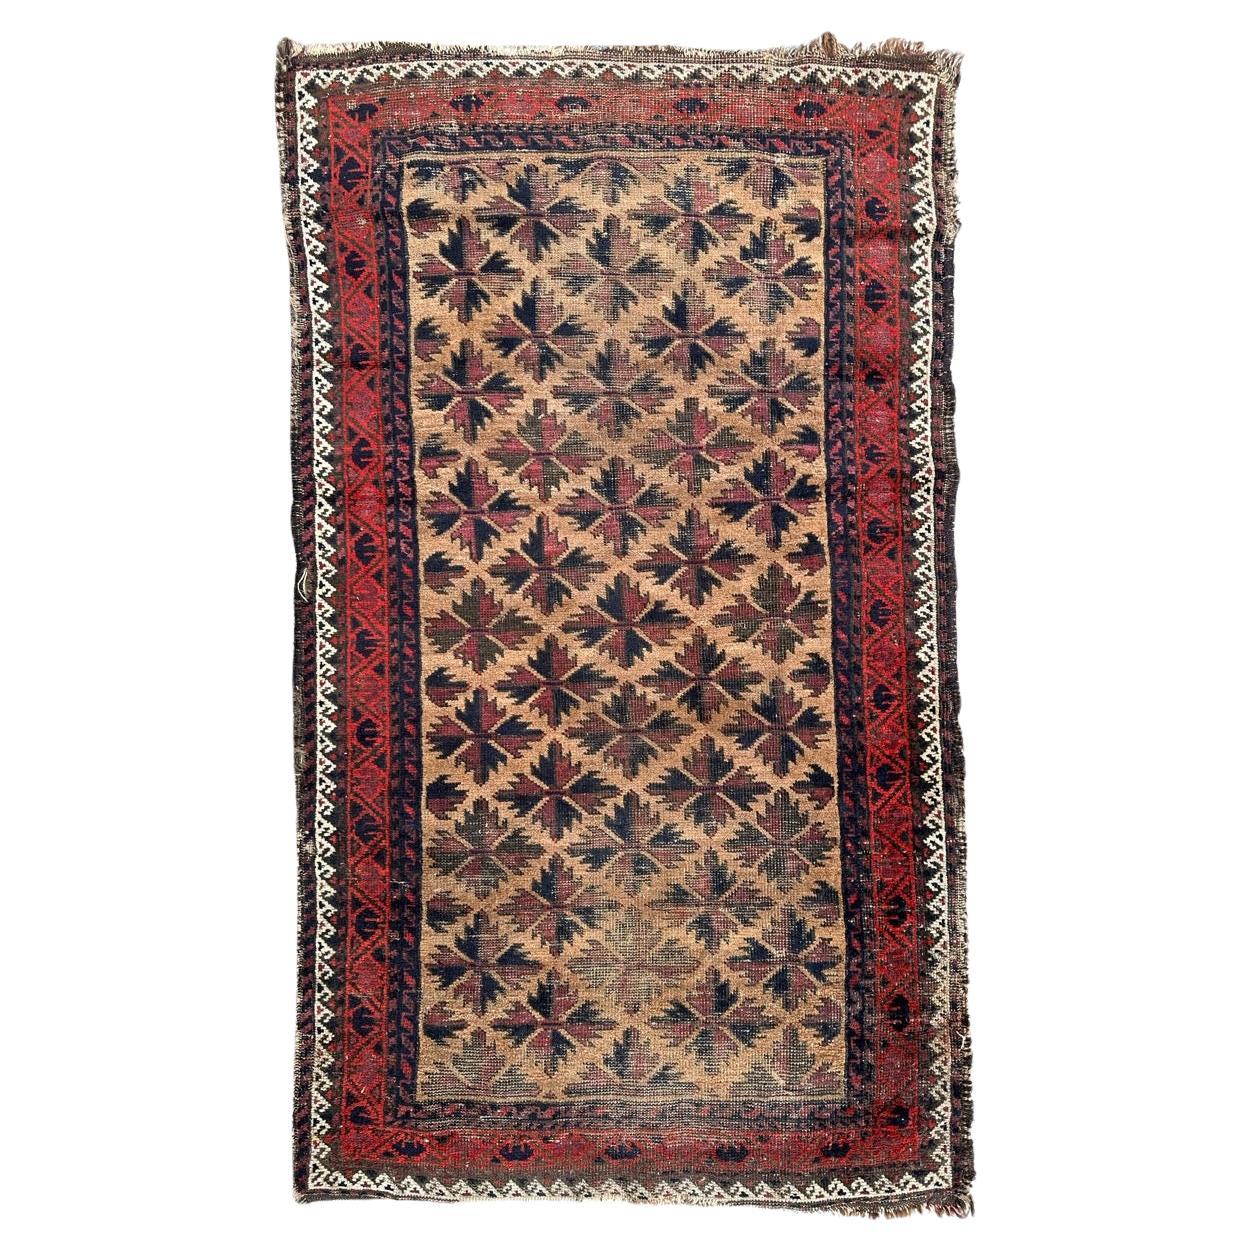 Le joli tapis antique turkmène baloutche de Bobyrug